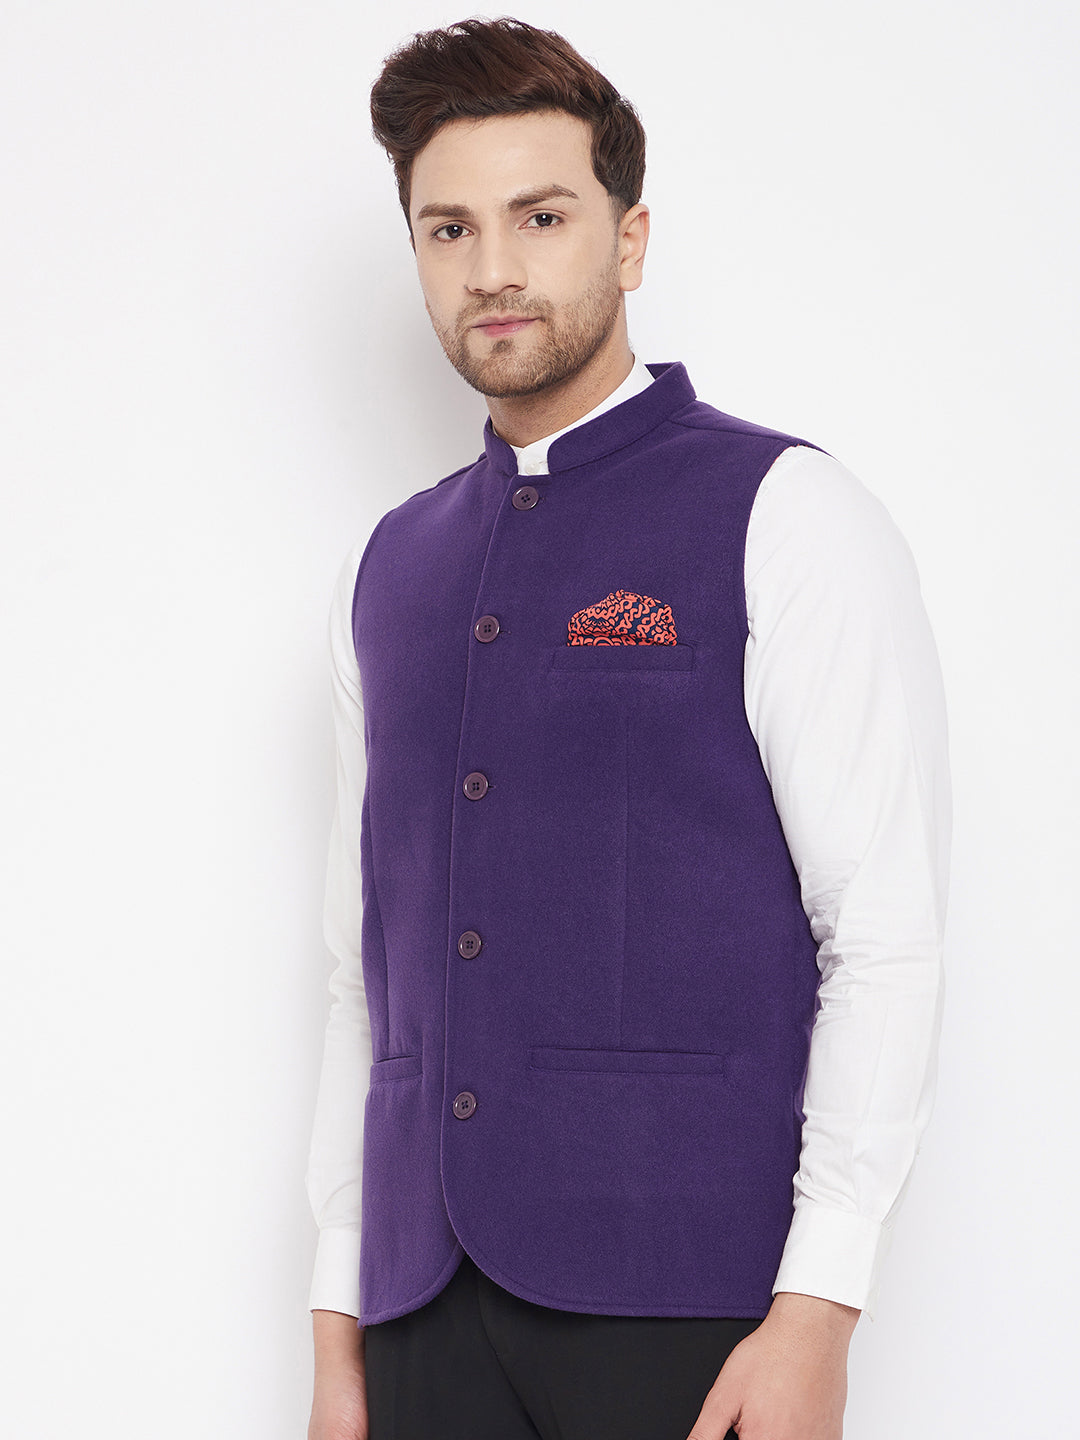 Men's Purple Color Nehru Jacket-Contrast Lining-Inbuilt Pocket Square - Even Apparels